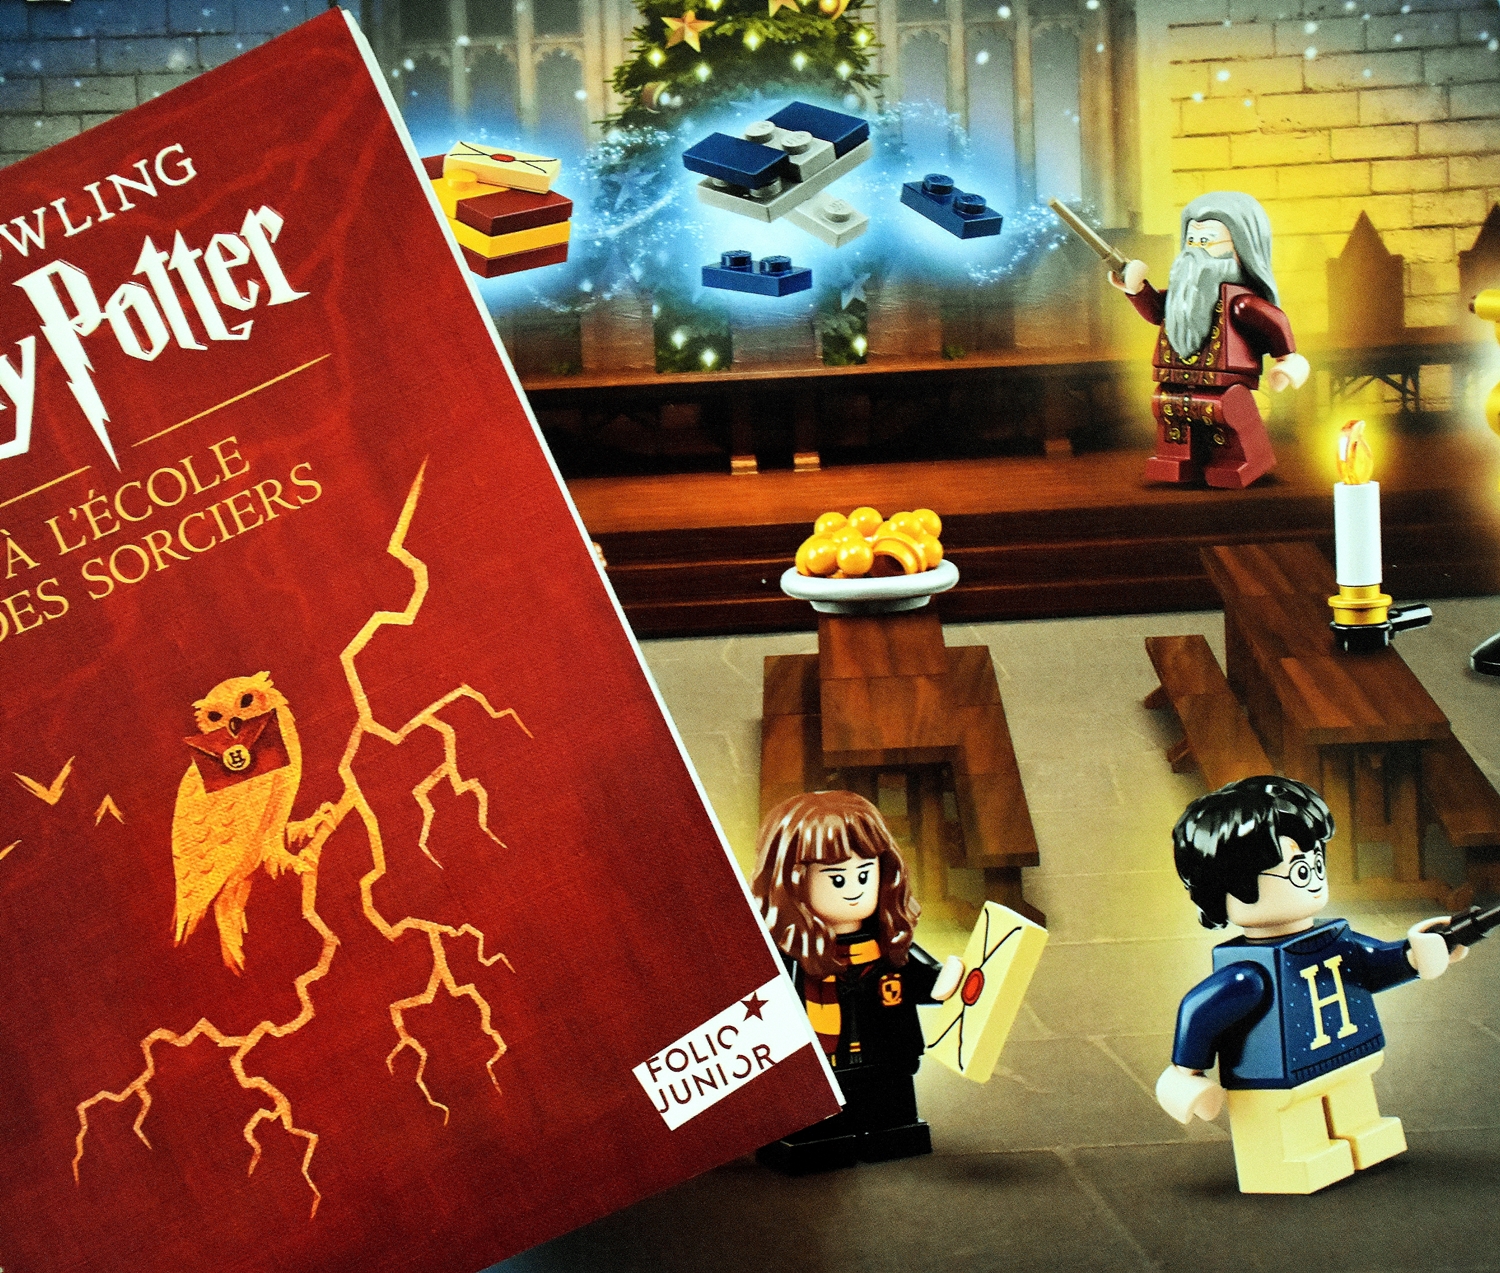 Livre Harry Potter à l'école des sorciers - Harry Potter